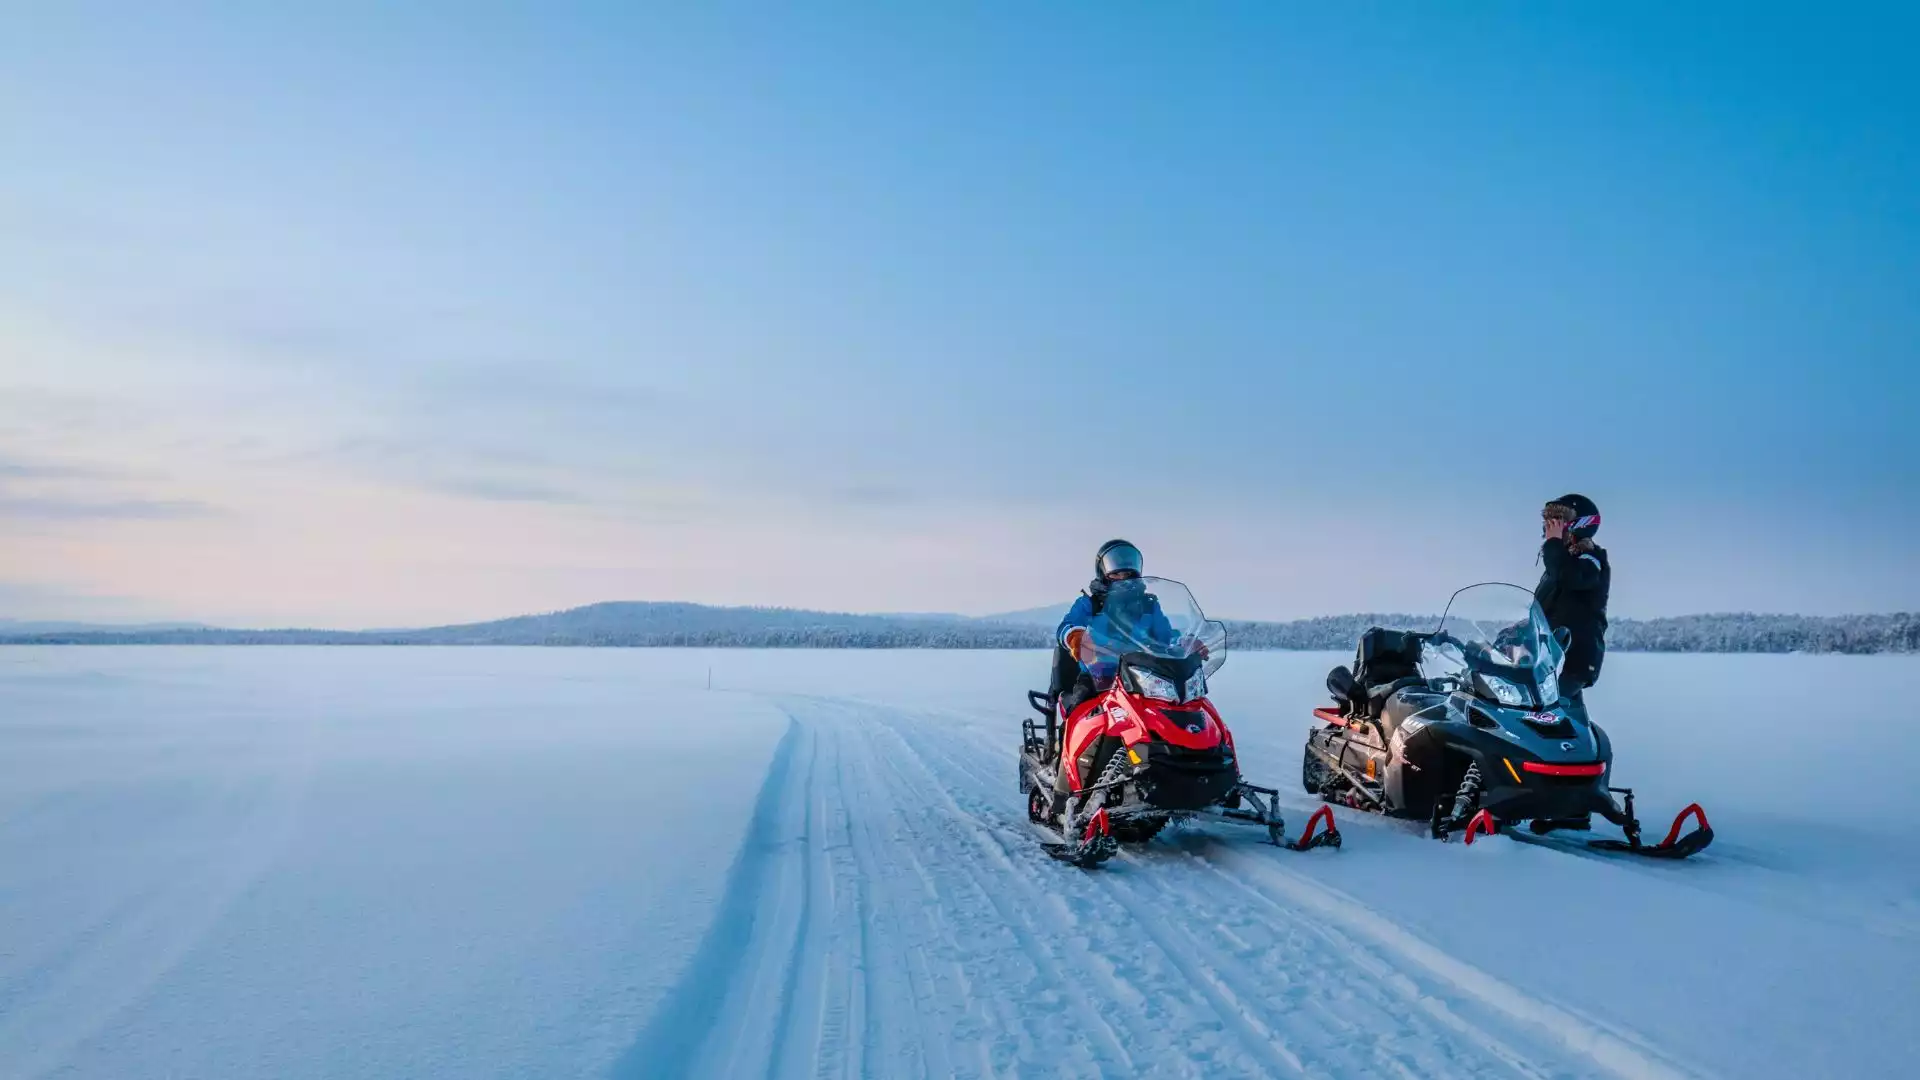 Ontdek Lapland met de sneeuwscooter